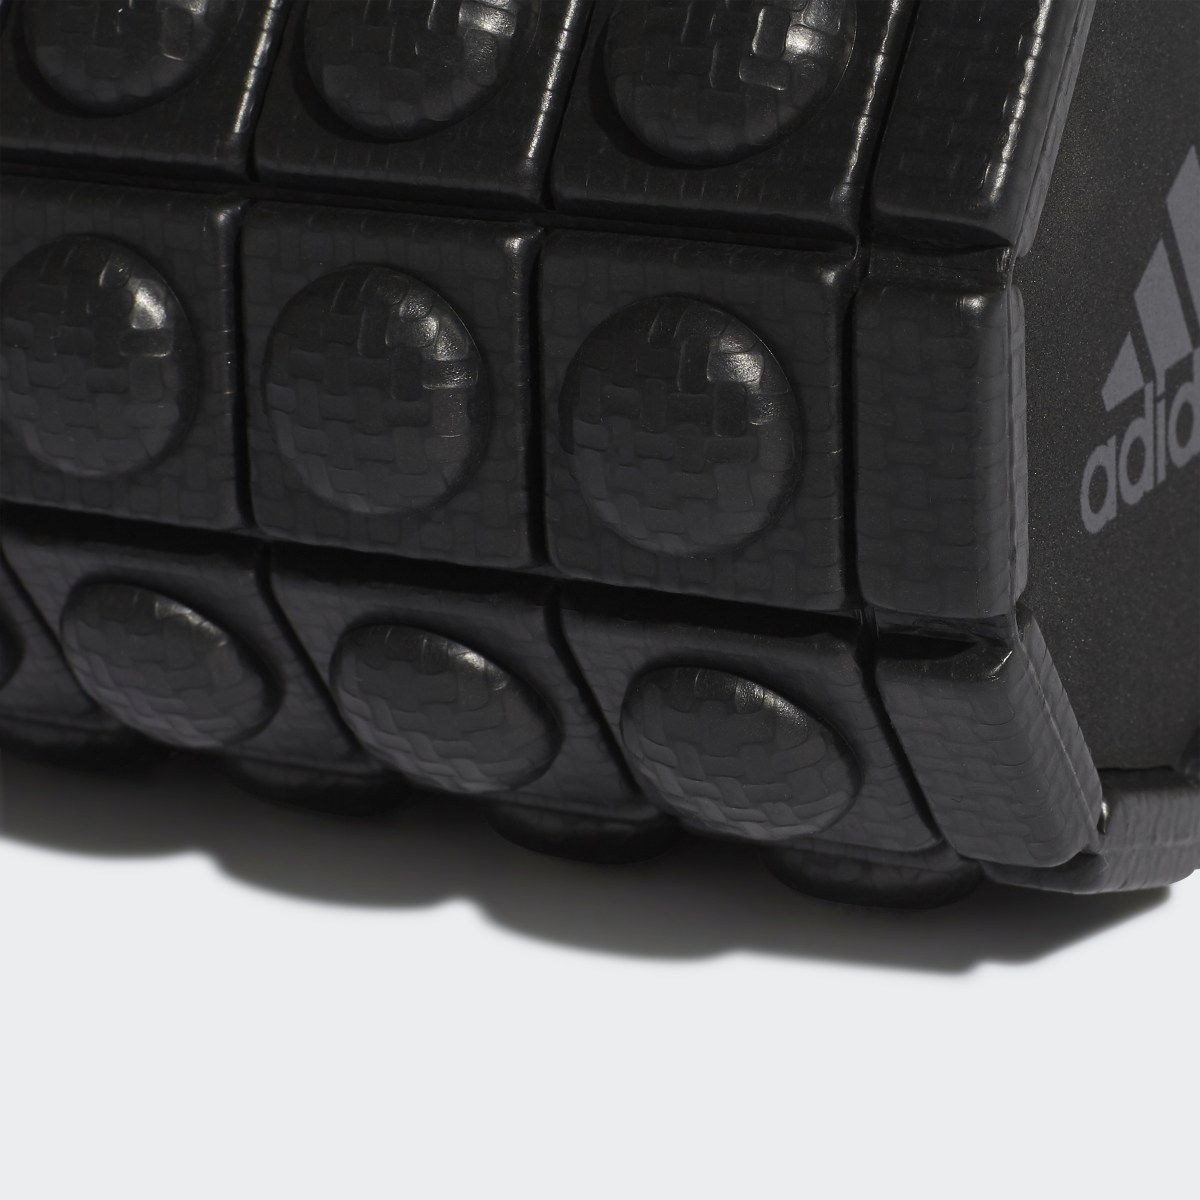 Adidas Textured Foam Roller. 5